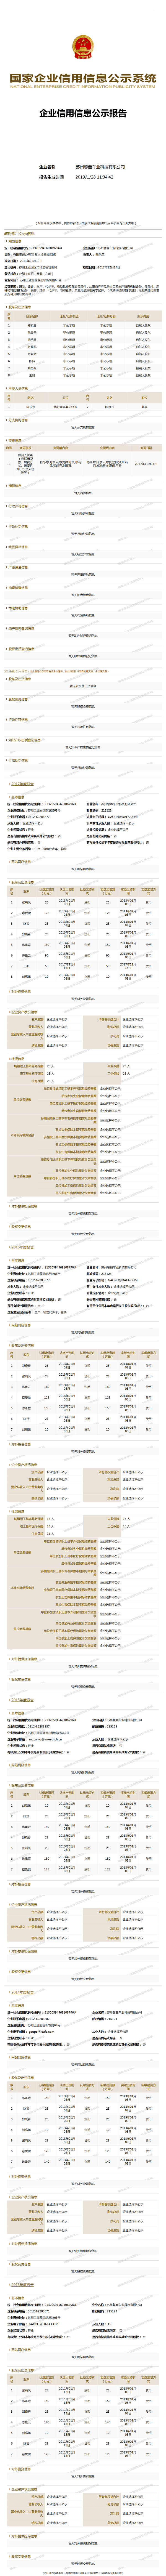 苏州馨鑫车业科技有限公司 (1)